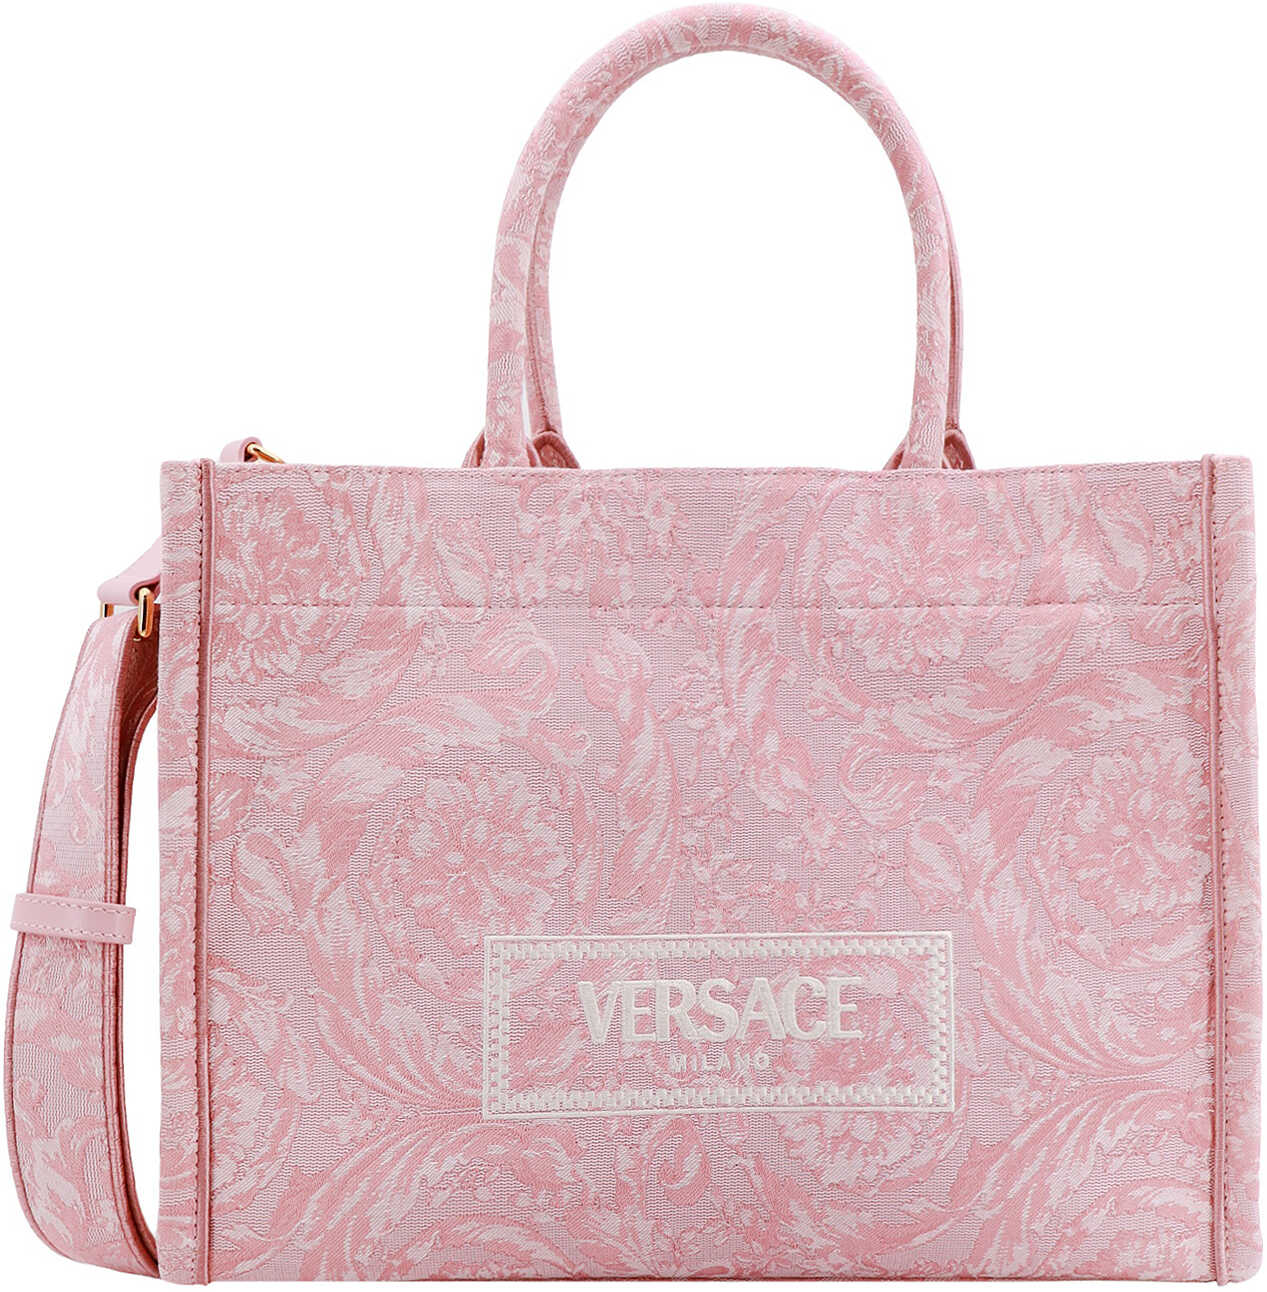 Versace Athena Barocco Pink